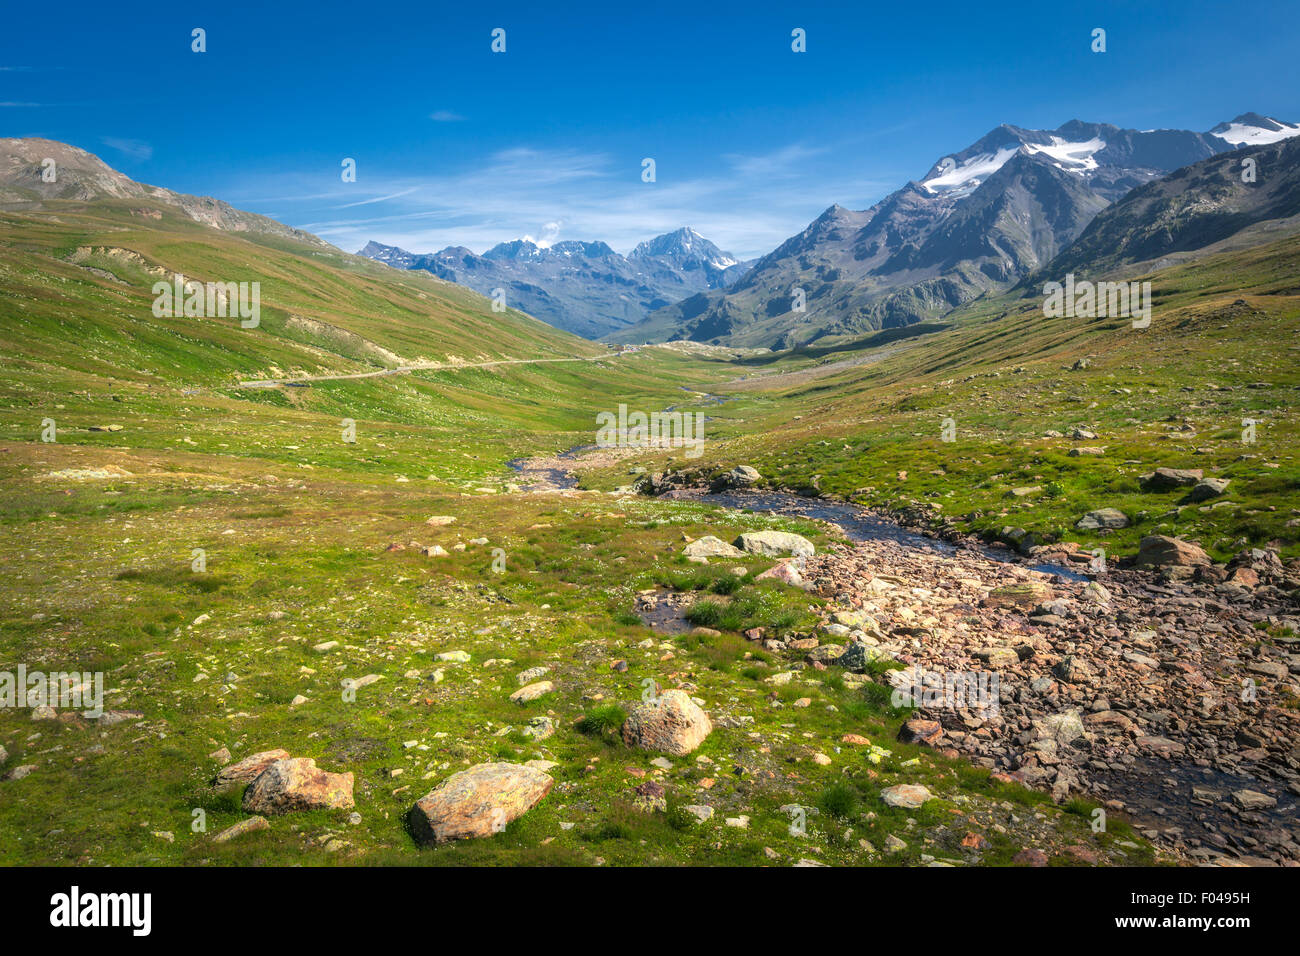 Le parc national de Stelvio, Gavia Pass, Valfurva, Alpes, Italie Banque D'Images